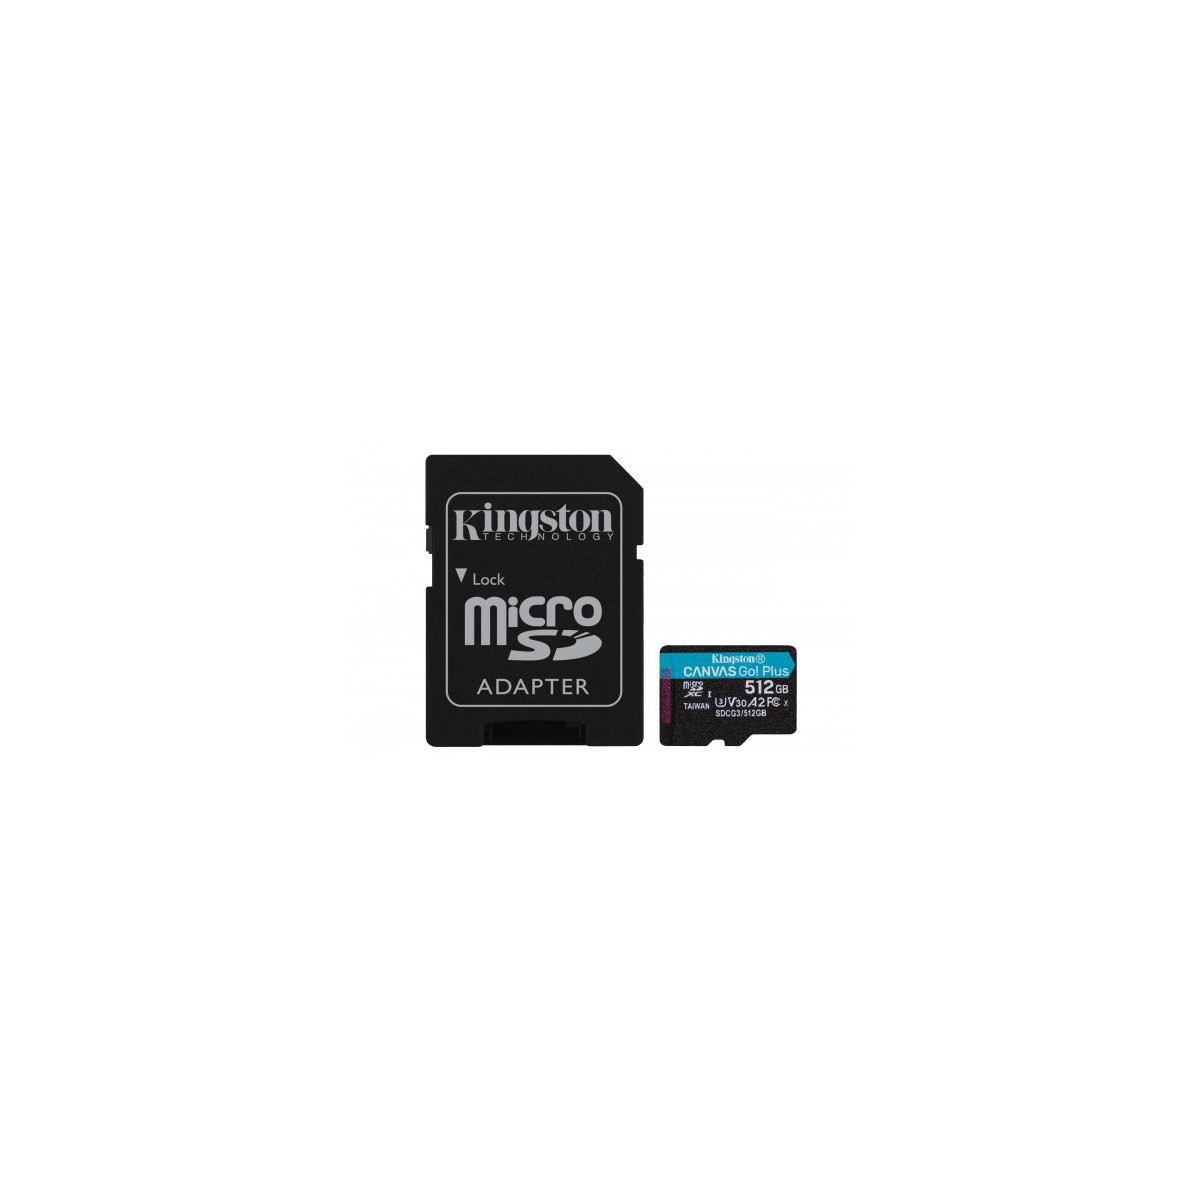 Kingston Technology Canvas Go Plus memoria flash 512 GB MicroSD Clase 10 UHS I